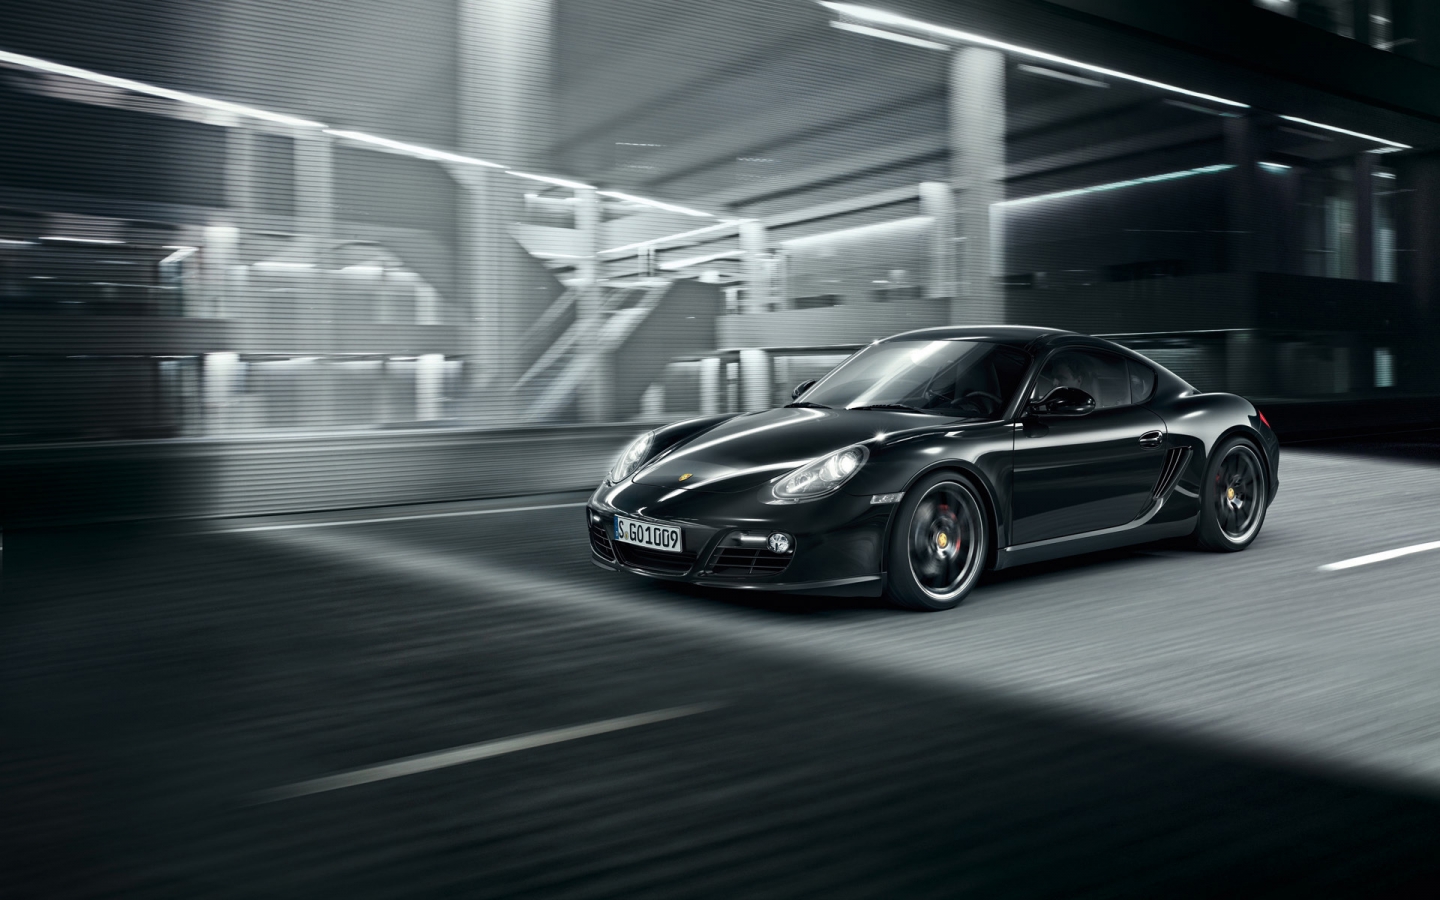 2011 Porsche Cayman S Black for 1440 x 900 widescreen resolution